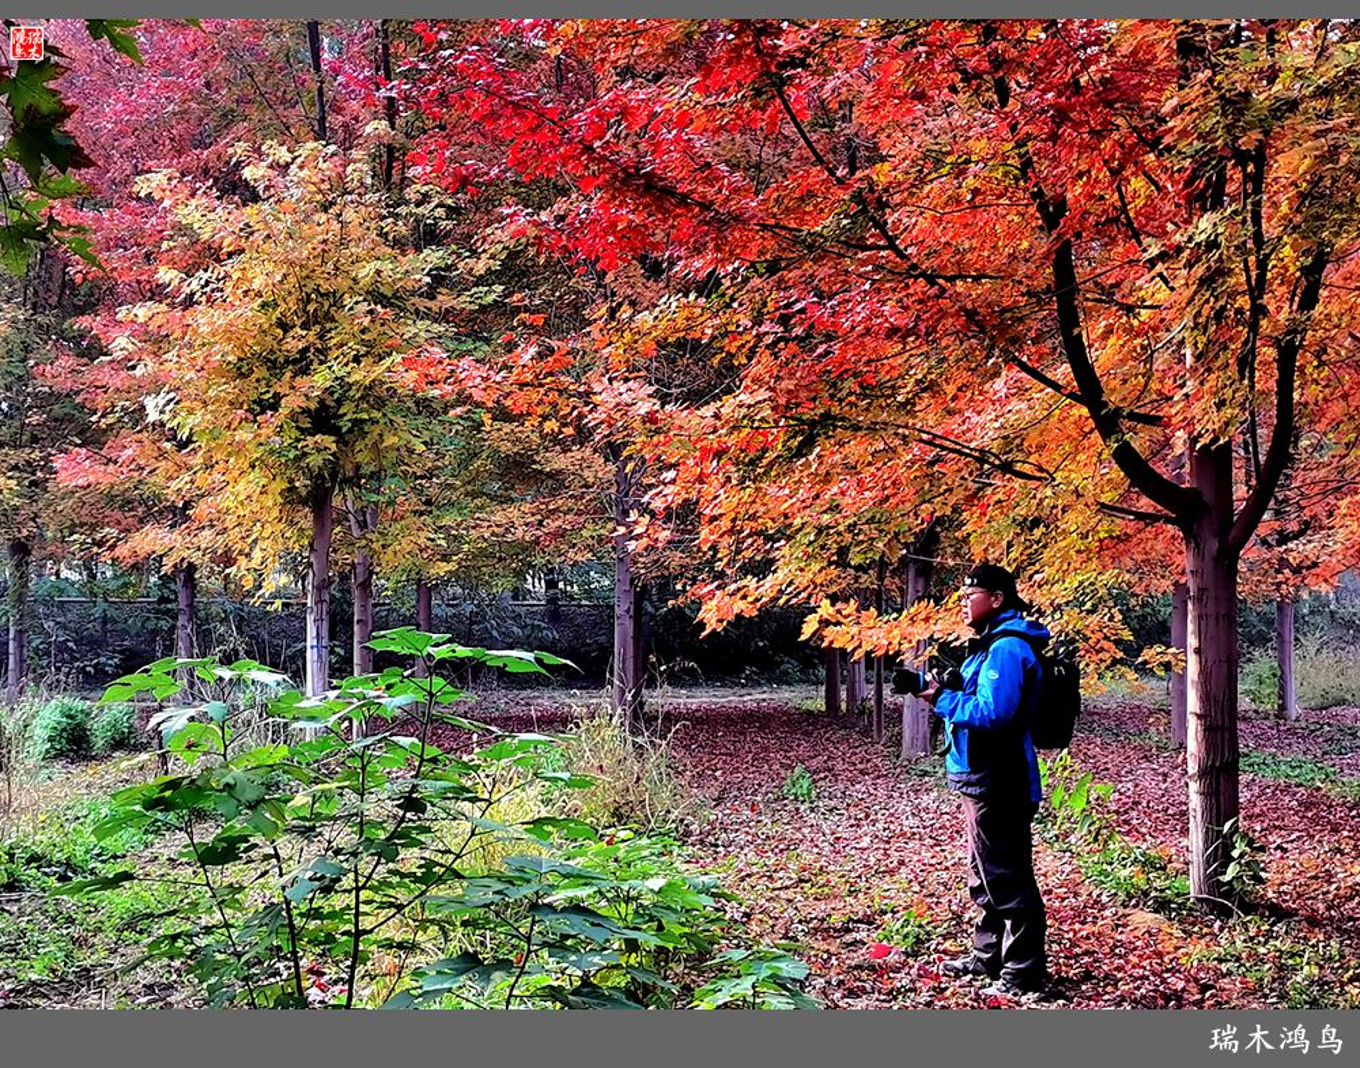 壁纸1600×1200壁纸 秋天红色的枫叶图片壁纸,浓浓秋色-秋天树叶摄影壁纸图片-风景壁纸-风景图片素材-桌面壁纸